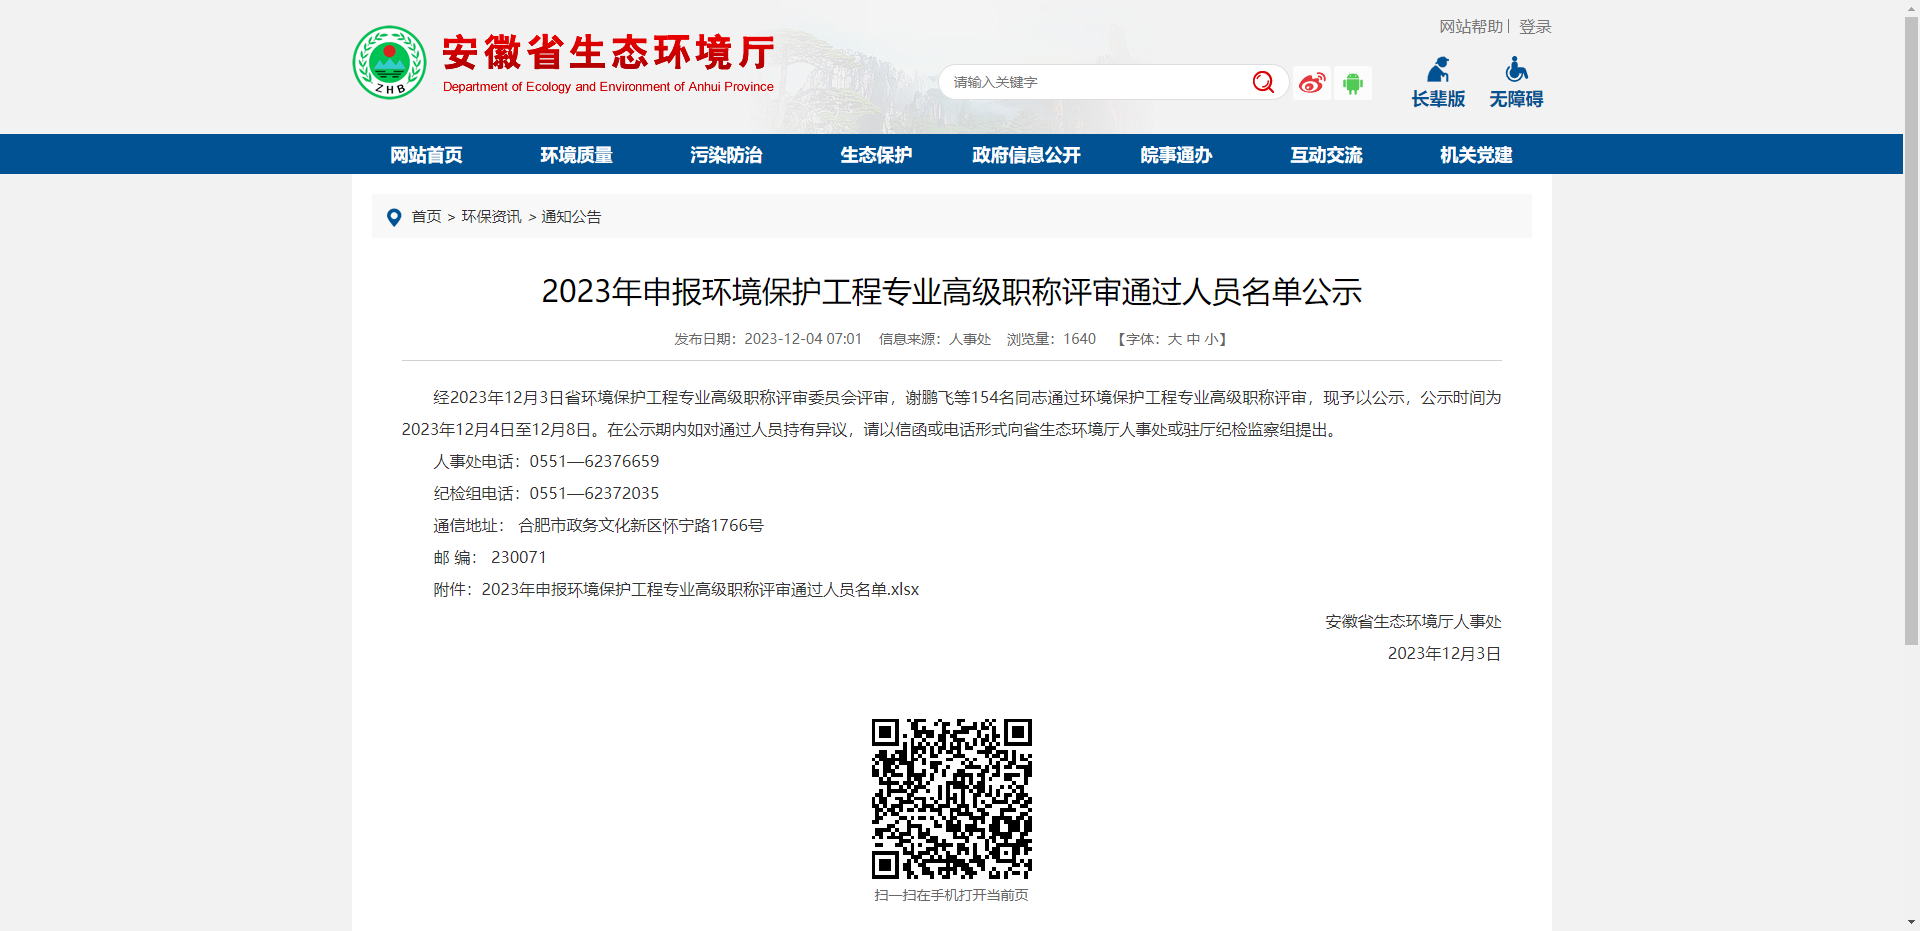 [安徽省]2023年申报环境保护工程专业高级职称评审通过人员名单公示